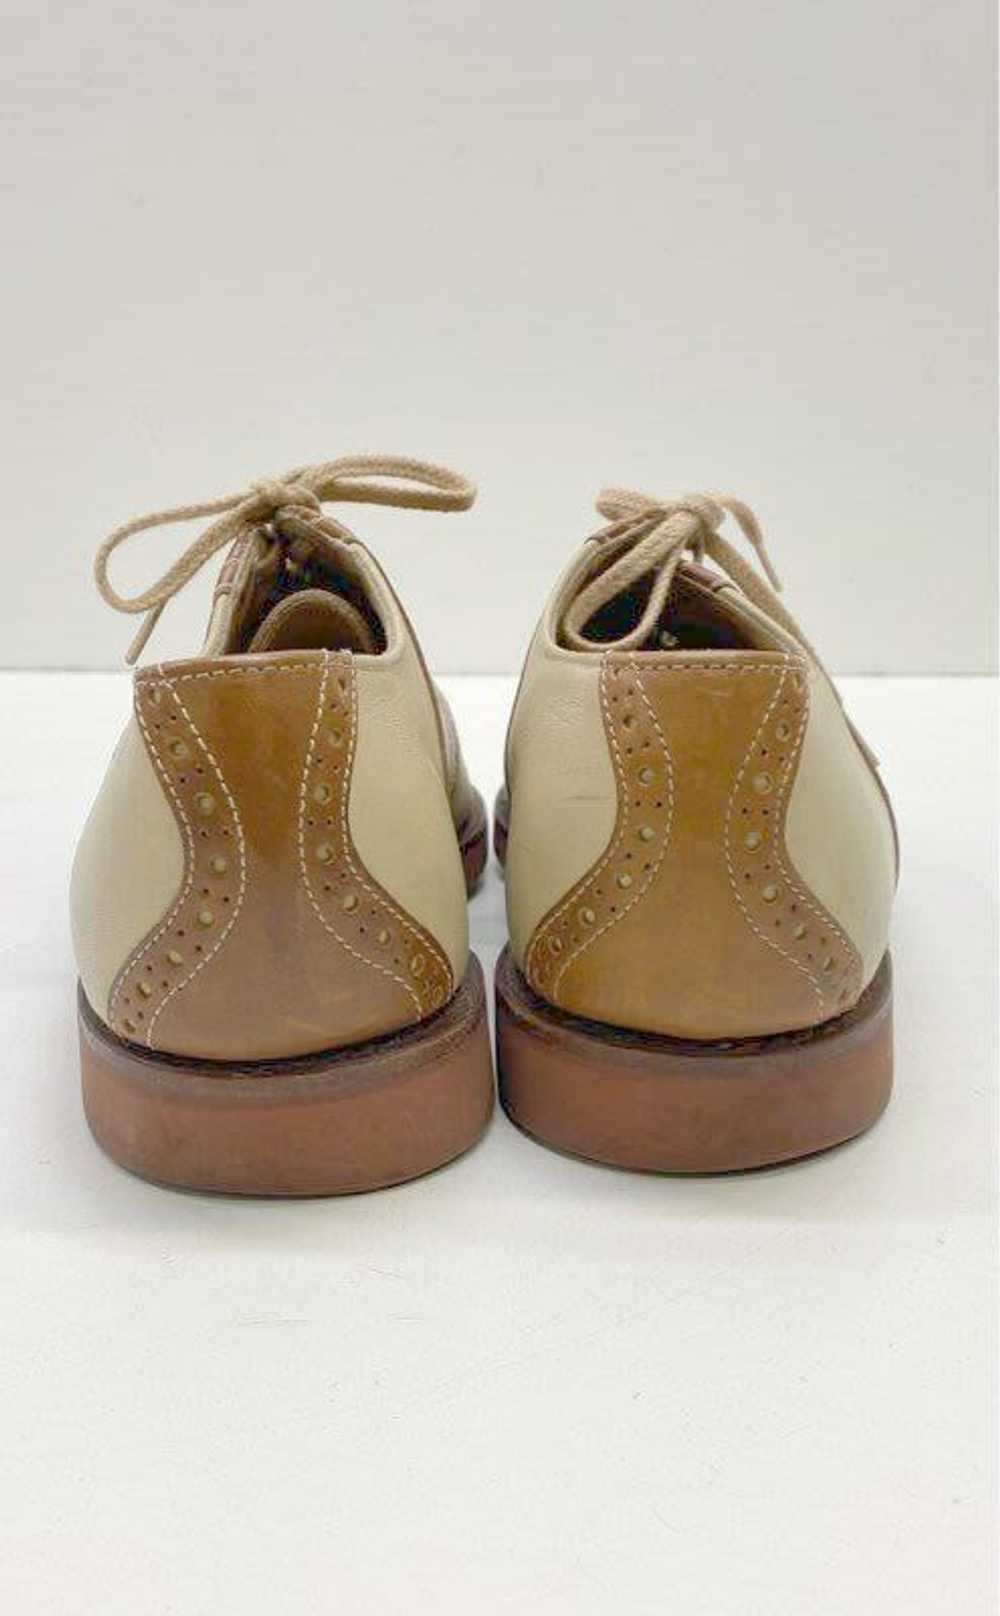 Cole Haan Men's Brown/Tan Saddle Shoes Sz. 8.5 - image 4